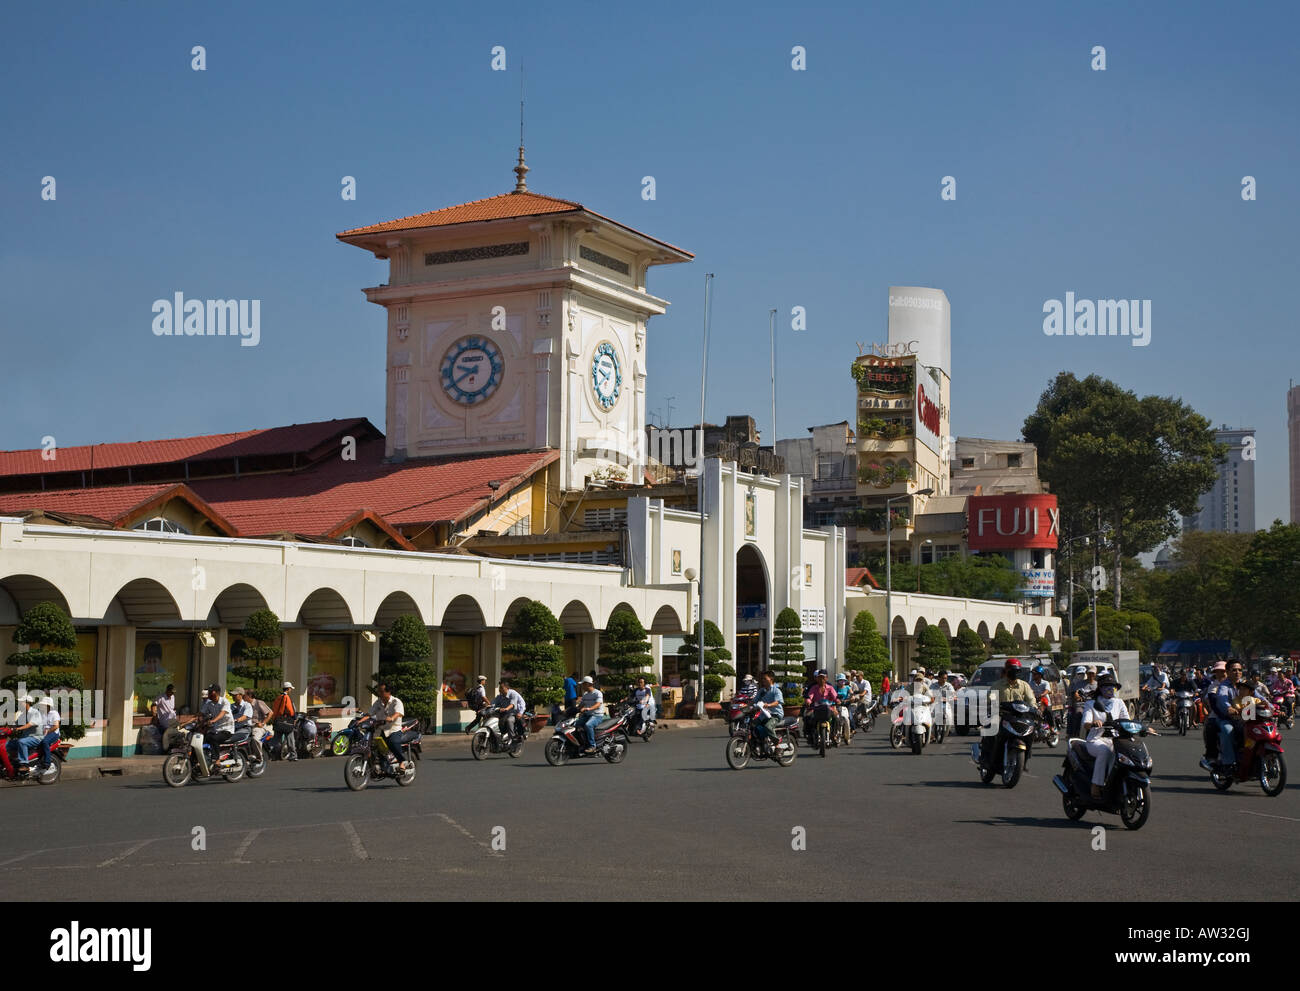 Les motocyclistes naviguer le rond-point à l'extérieur du marché de Ben Thanh HO CHI MINH CITY SAIGON VIETNAM Banque D'Images